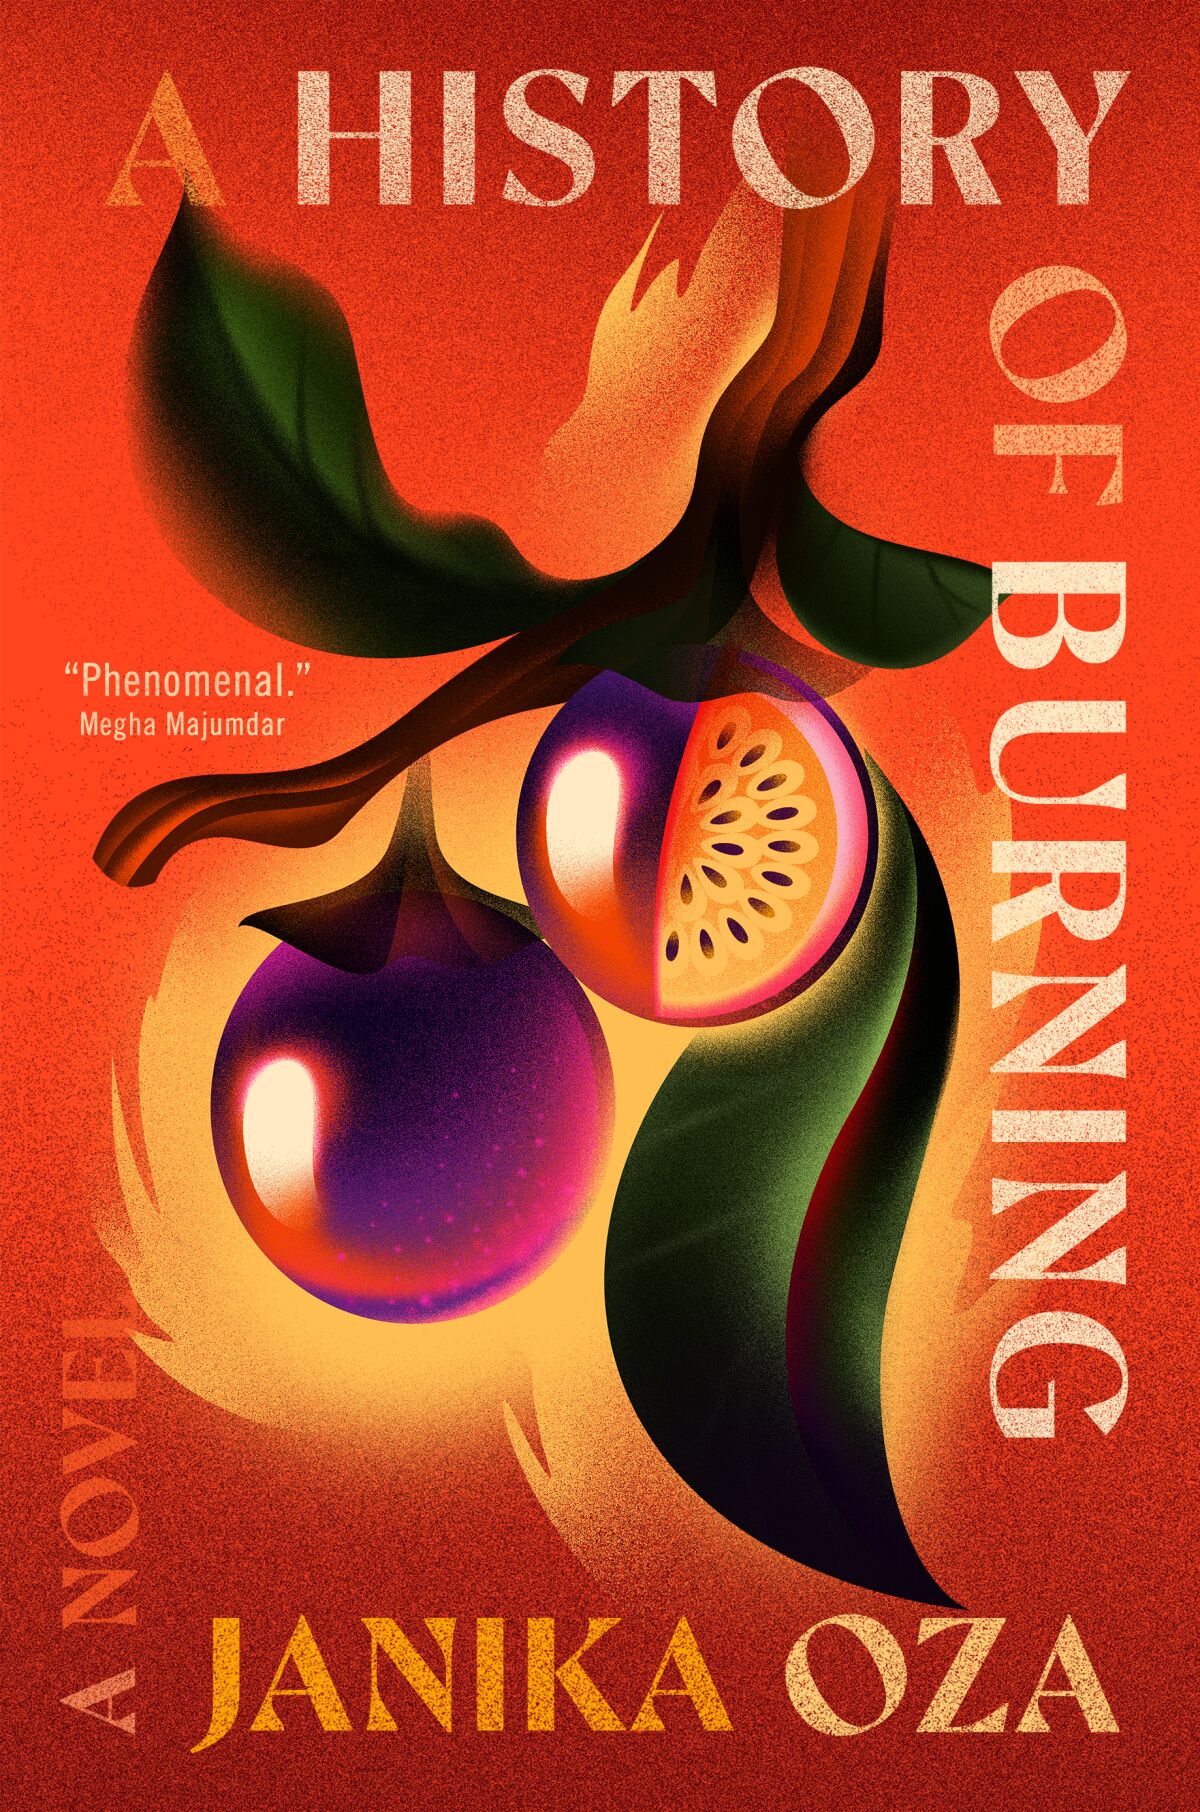 kapağı "Bir Yanma Tarihi" Janika Oza, daldan sarkan meyveleri gösteriyor